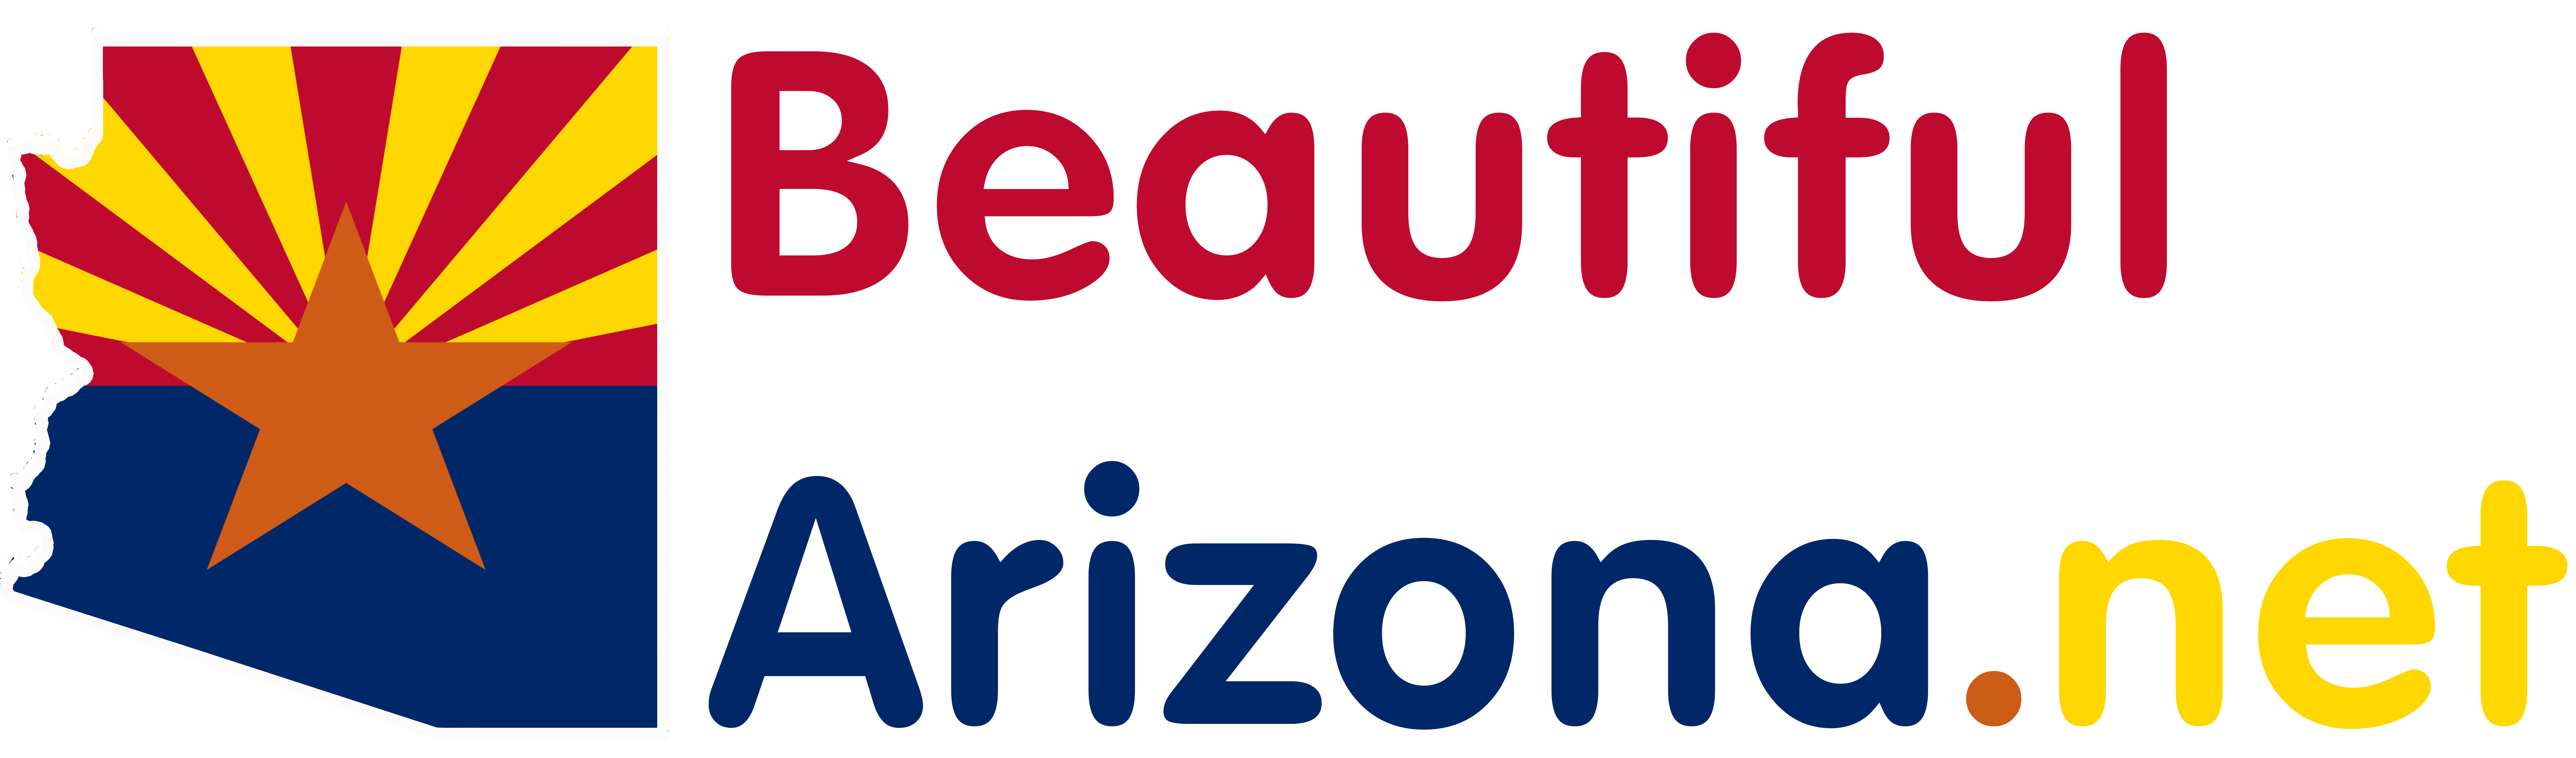 Beautiful Arizona - Fun Things to do in Arizona